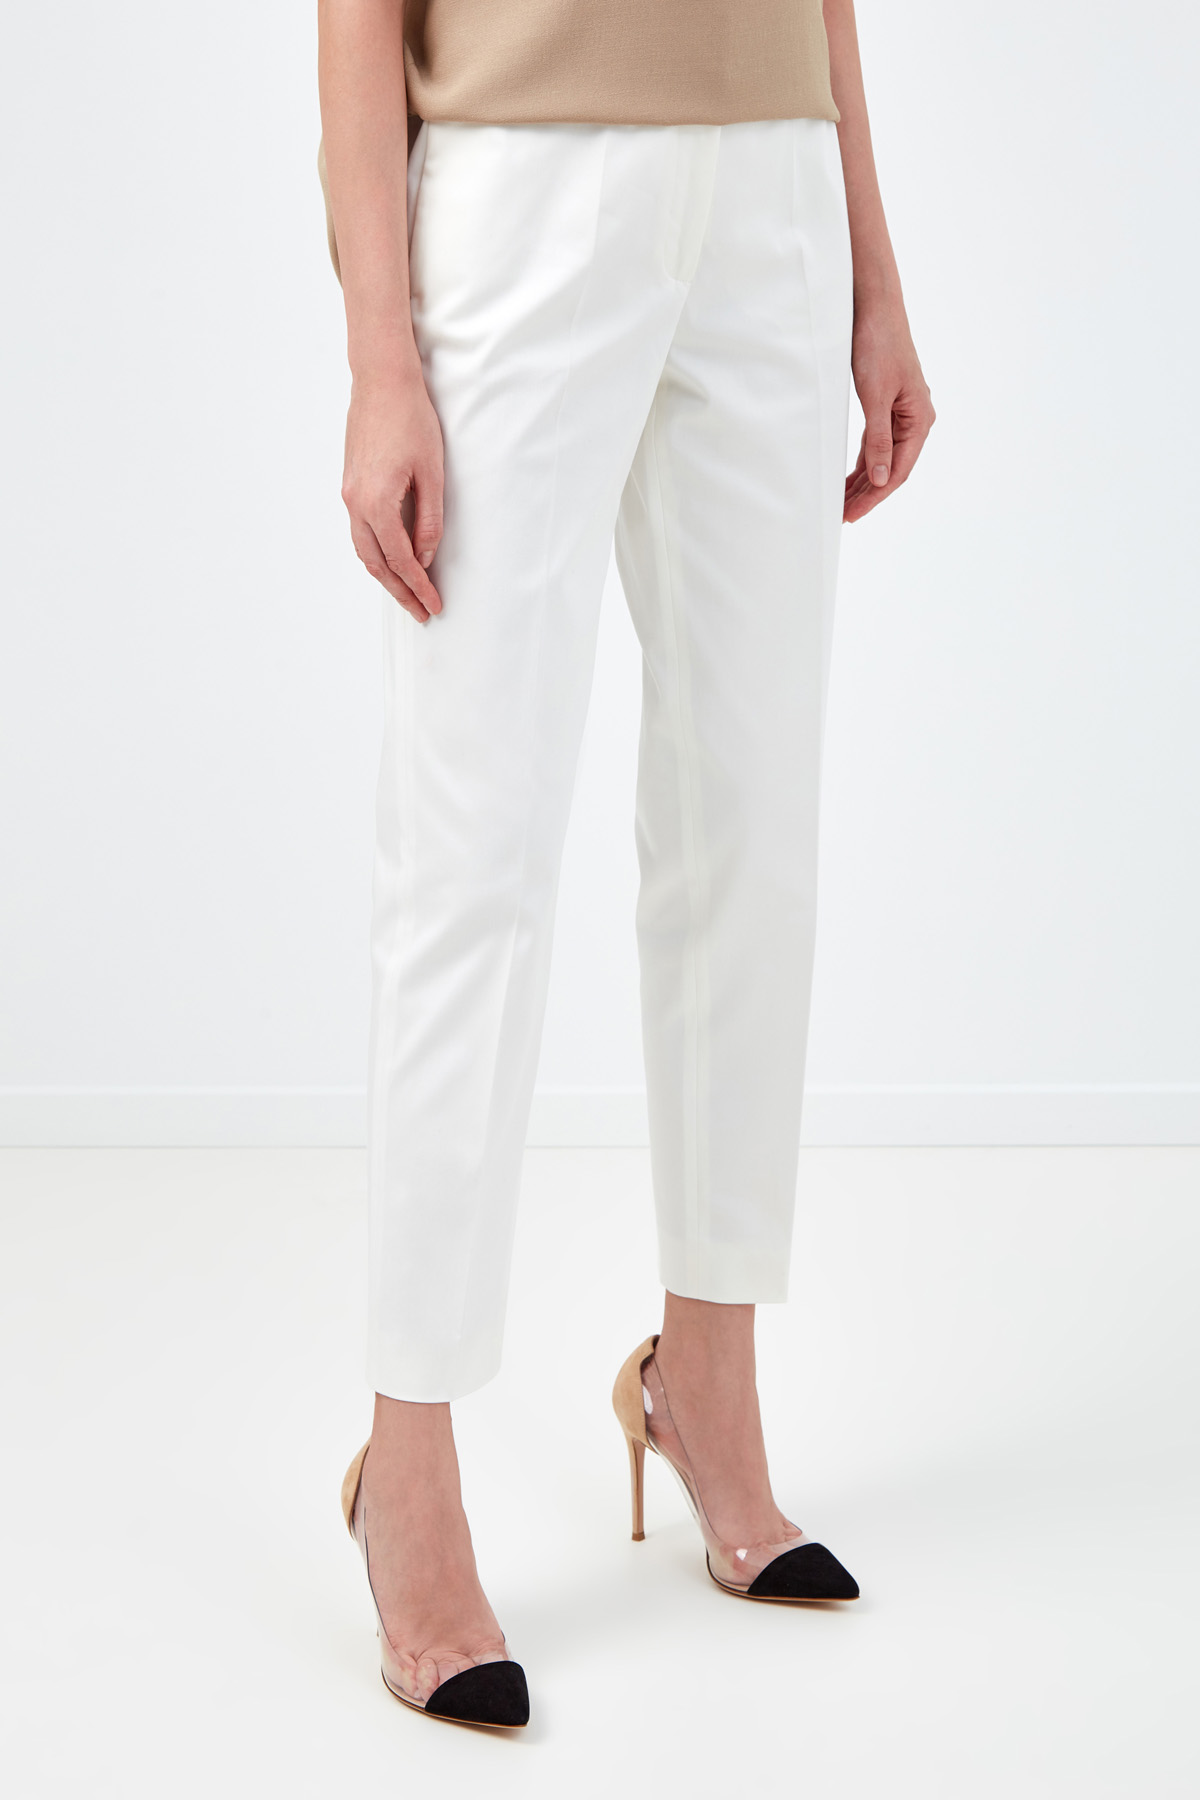 Зауженные белые брюки из гладкого хлопка AGNONA, цвет белый, размер 44;38;42 - фото 3